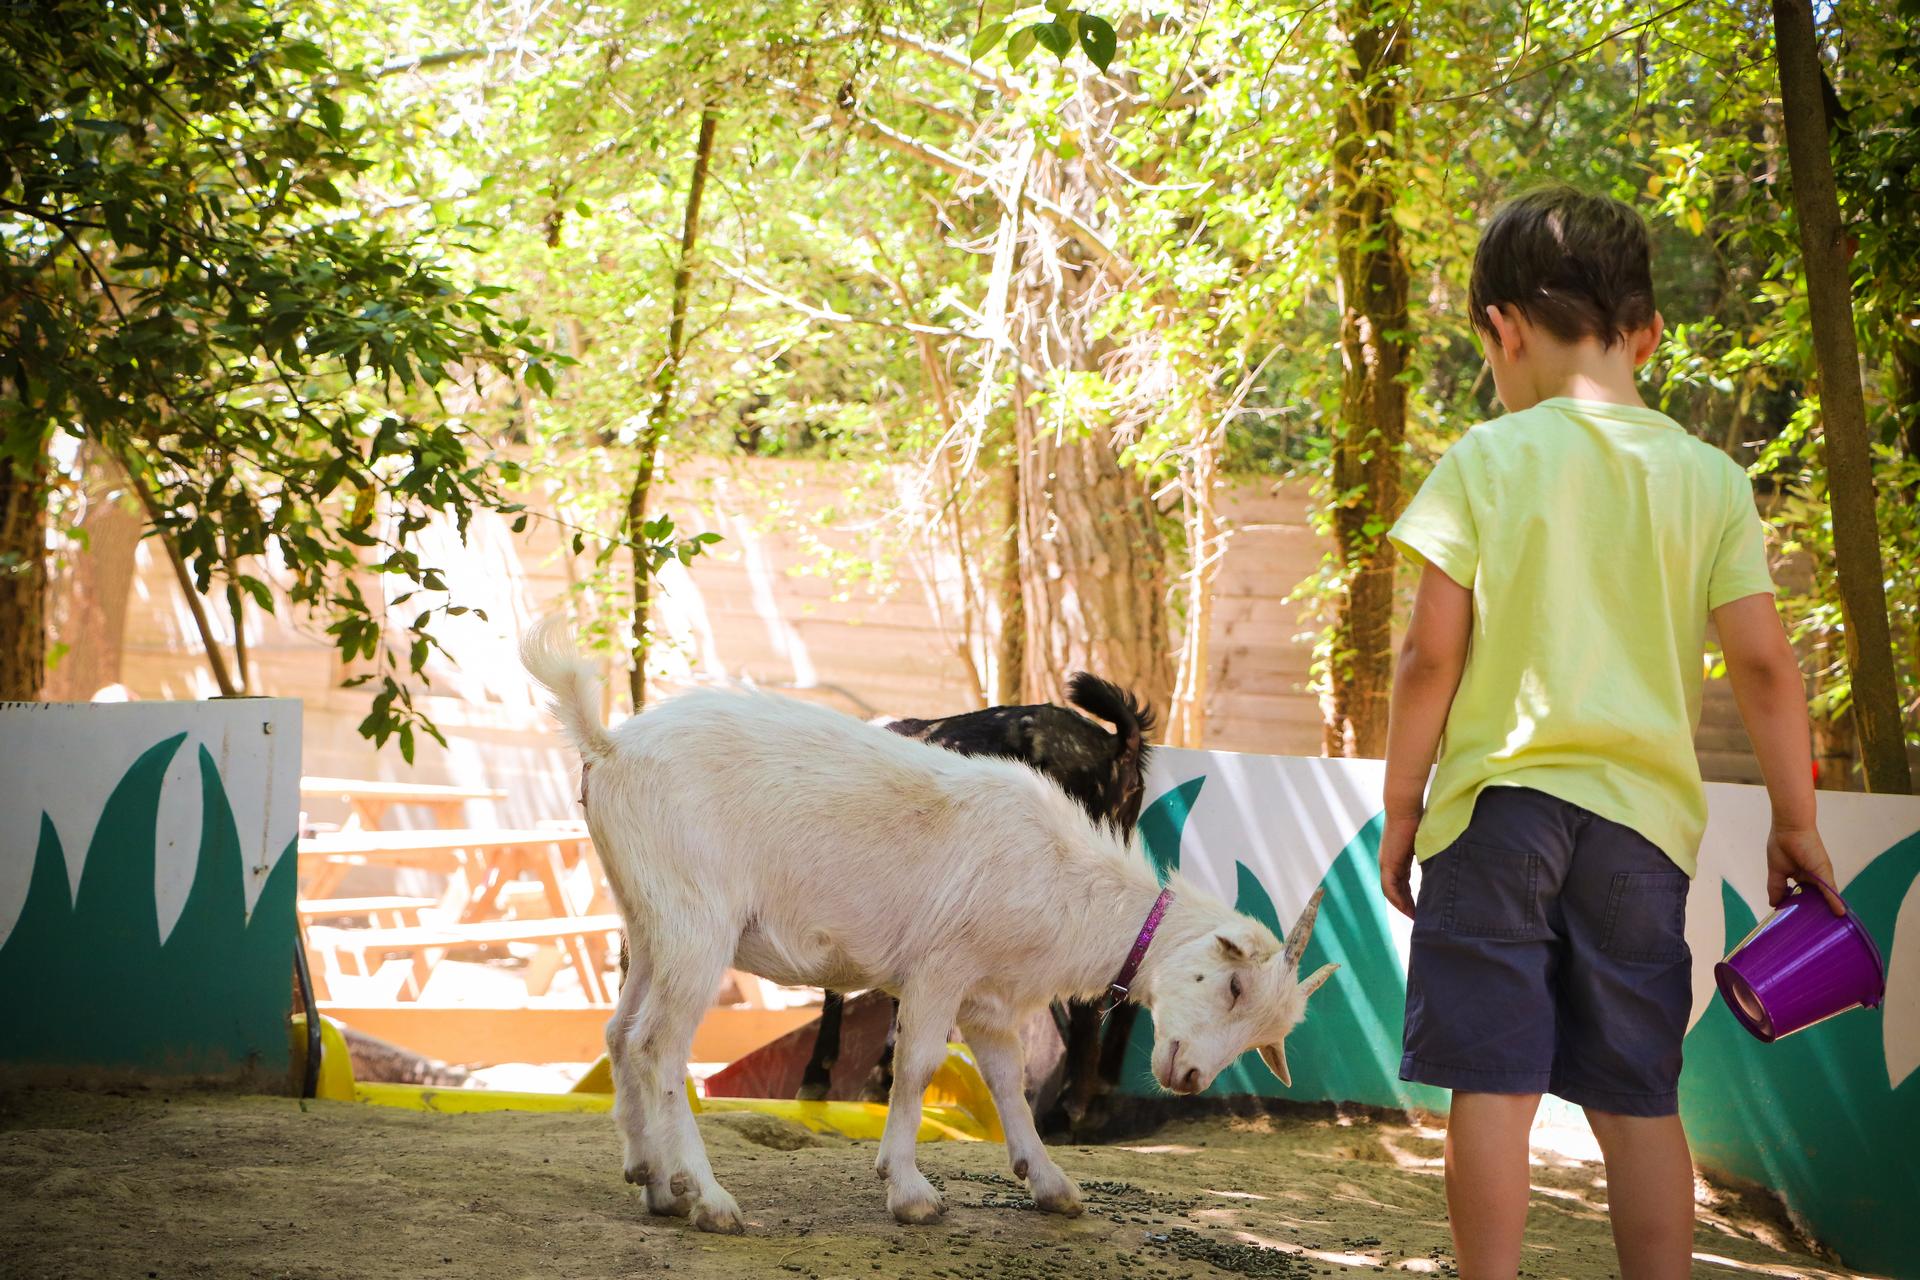 Mini ferme Herault - Parc de loisirs pour enfants